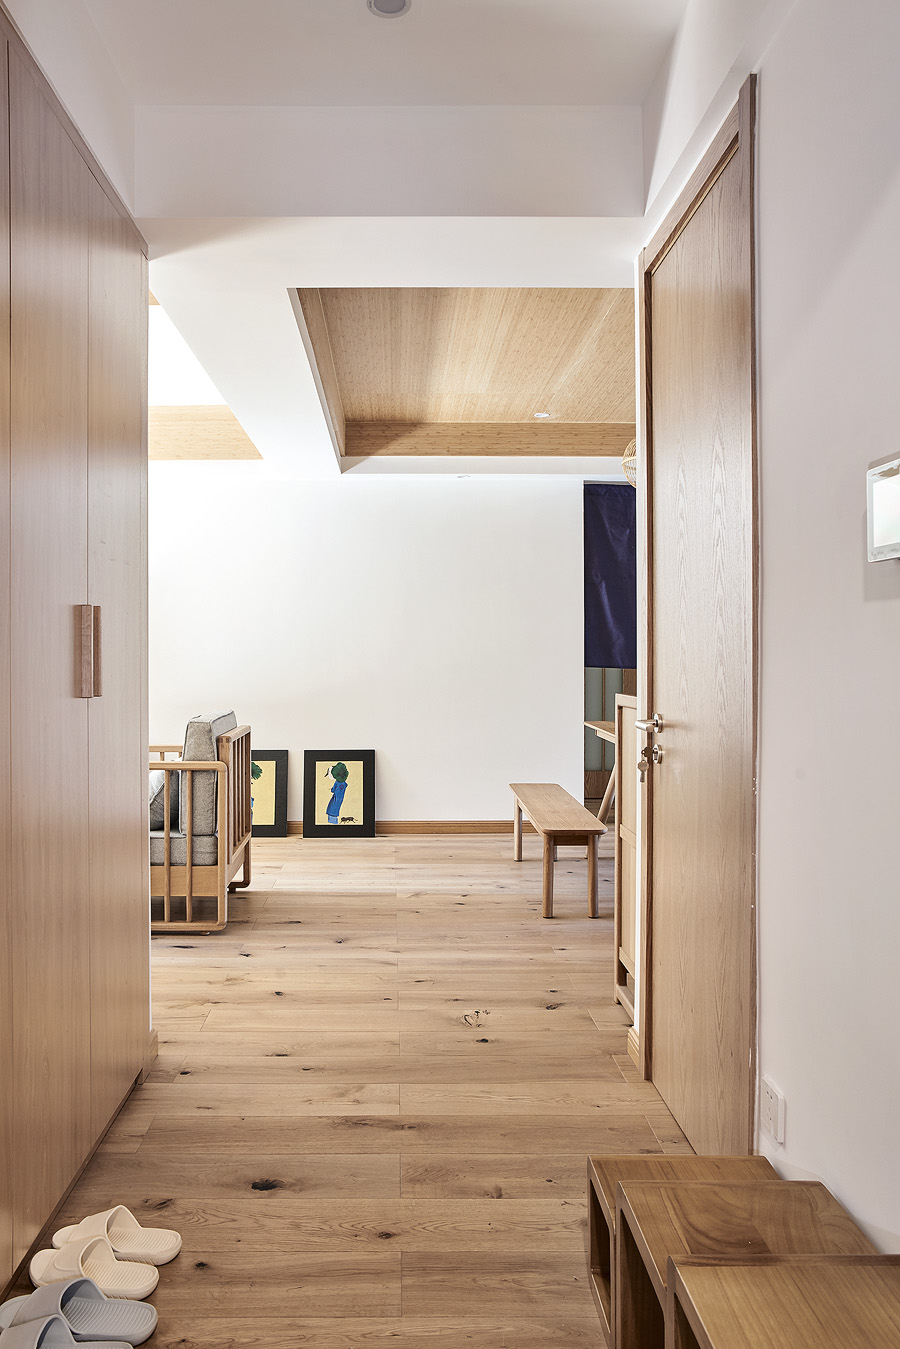 日式简约原木风格家装设计室内装修效果图-玄关